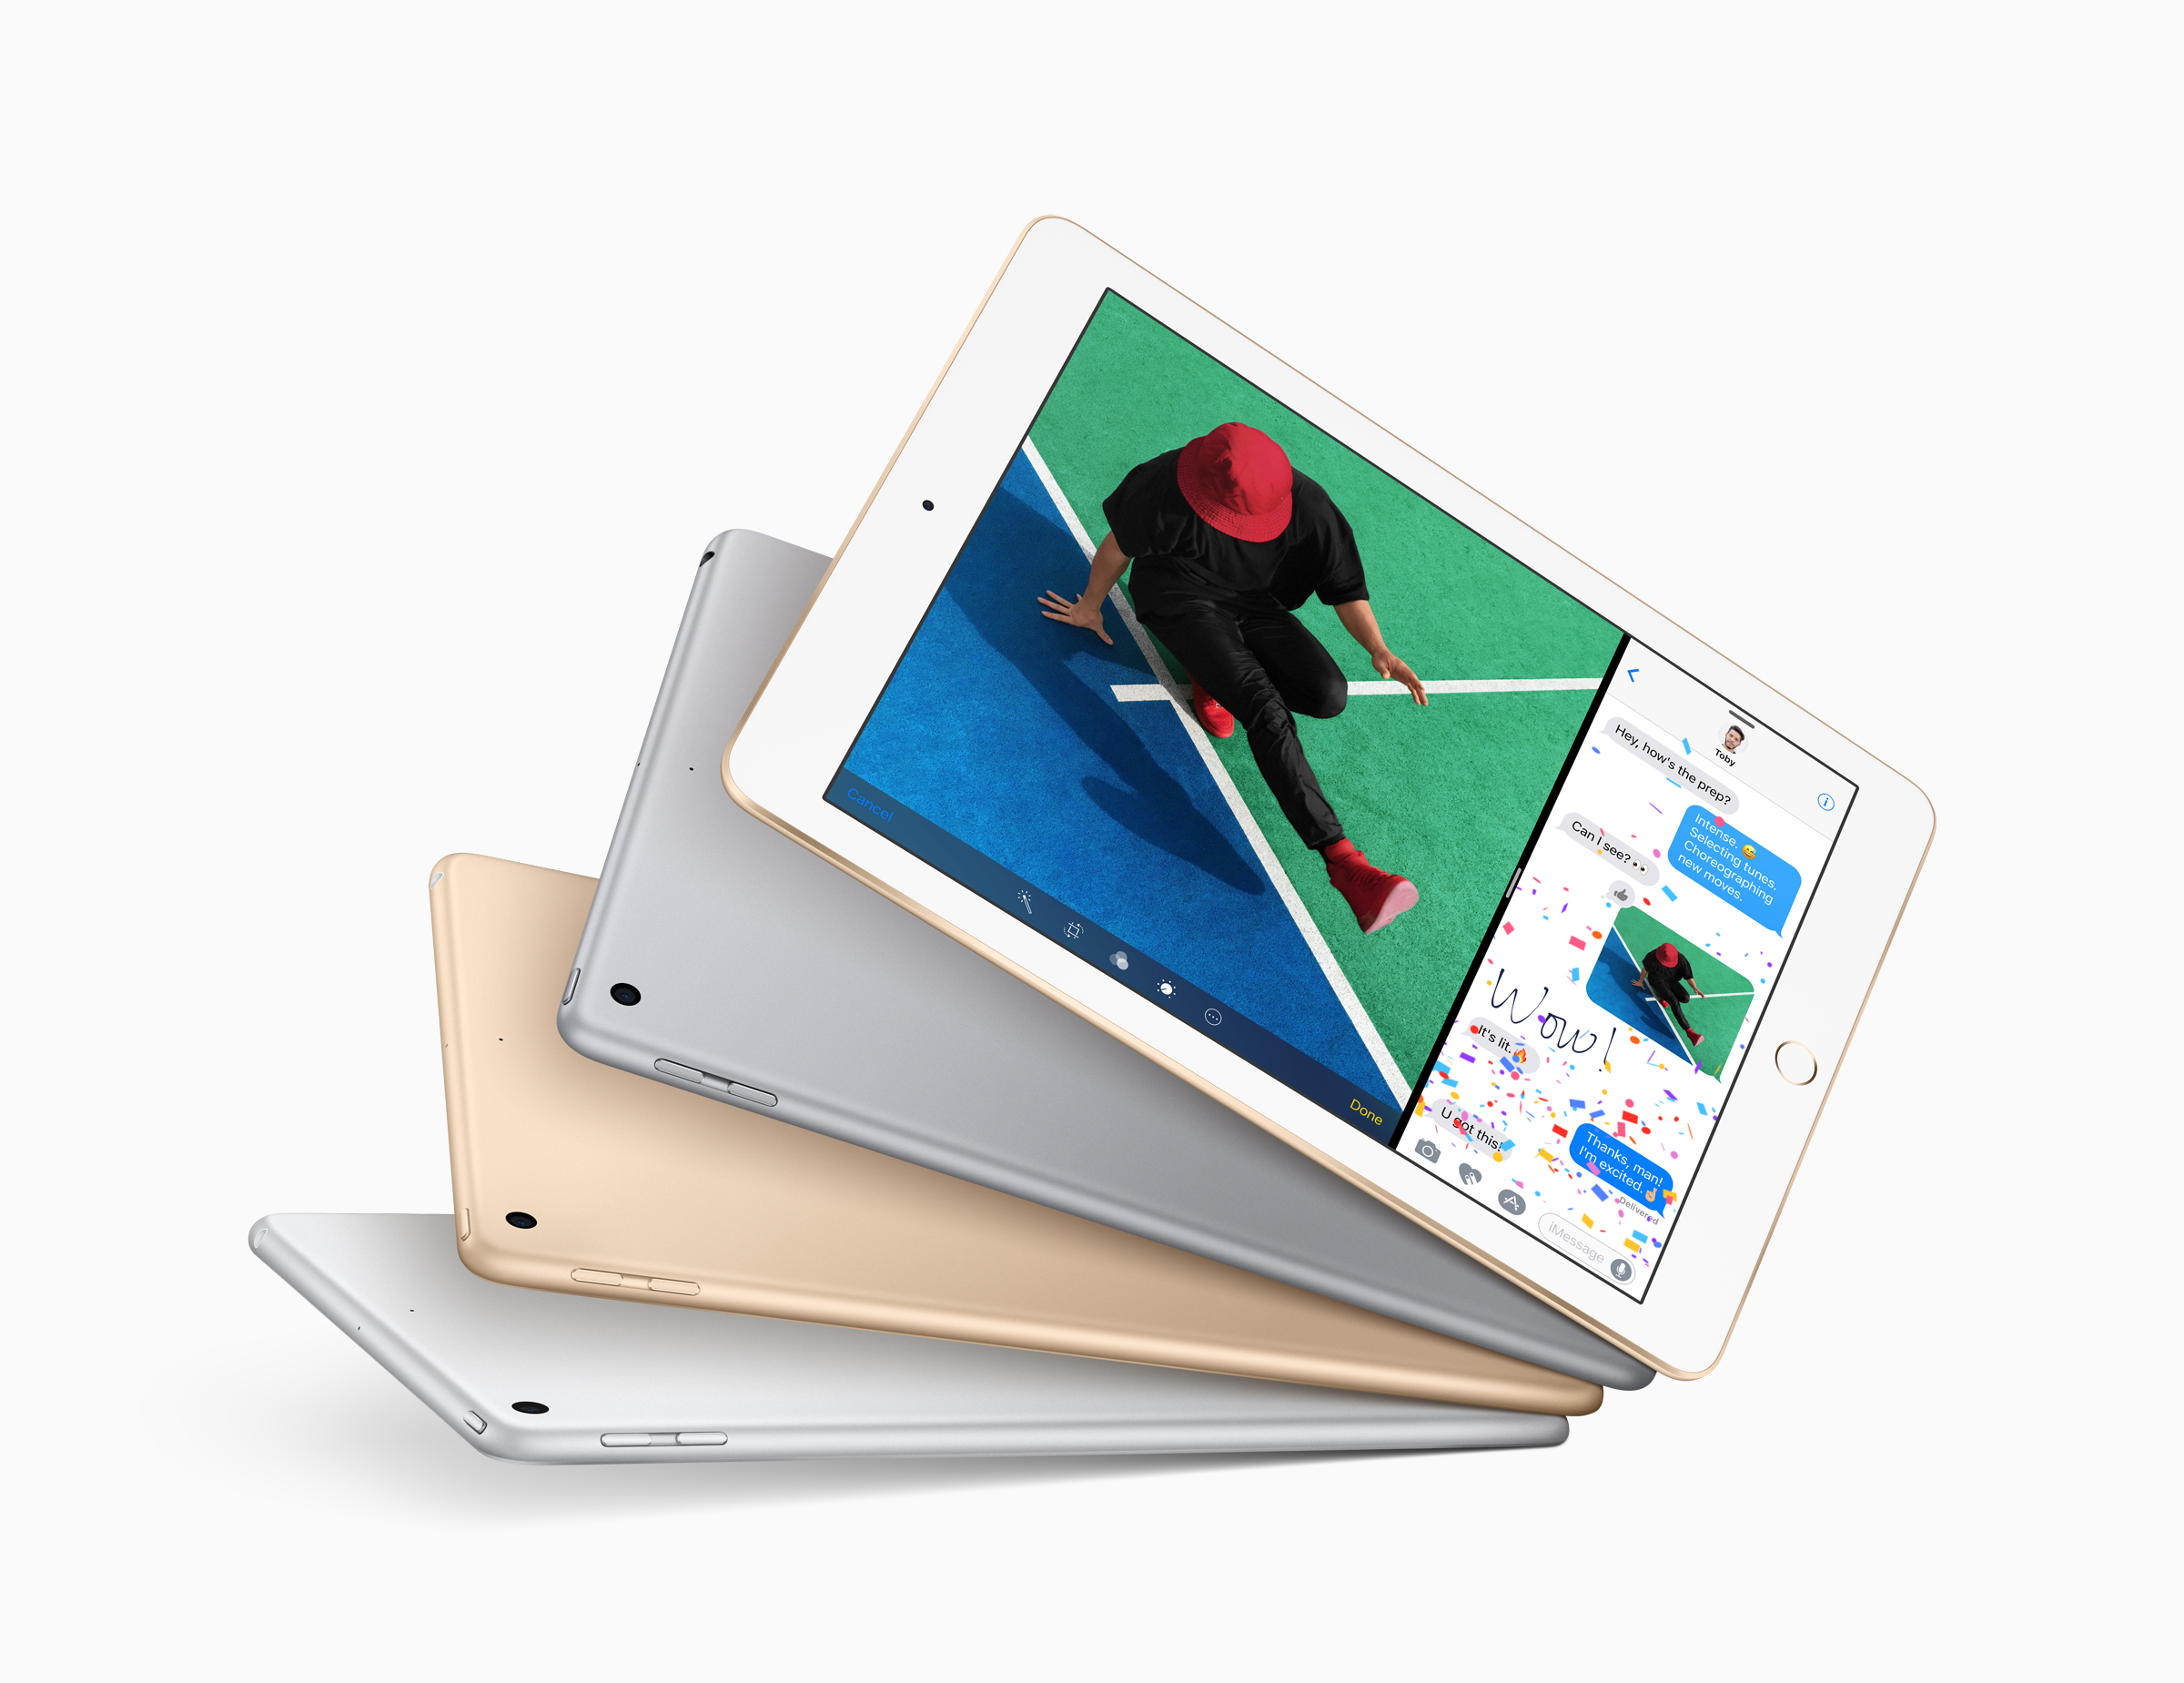 TECNOLOGIA: Apple lança iPad de 9,7 polegadas com preço mais acessível